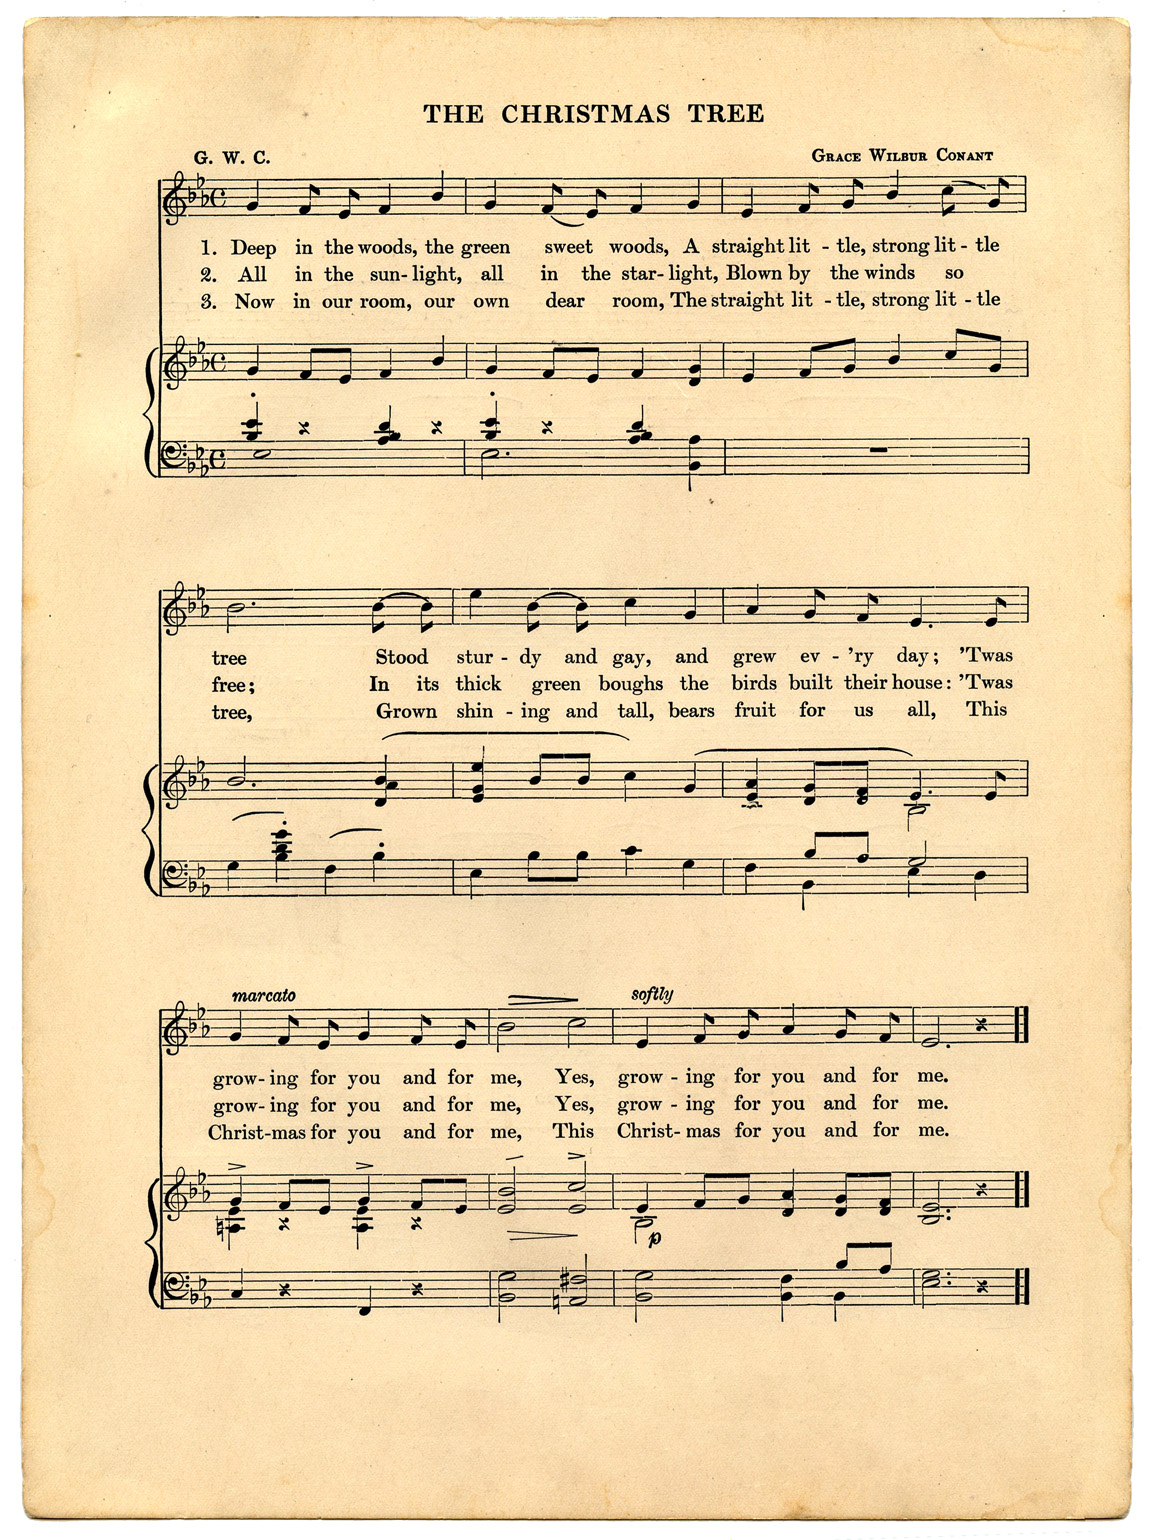 Vintage Christmas Sheet Music Printable - The Graphics Fairy - Christmas Carols Sheet Music Free Printable